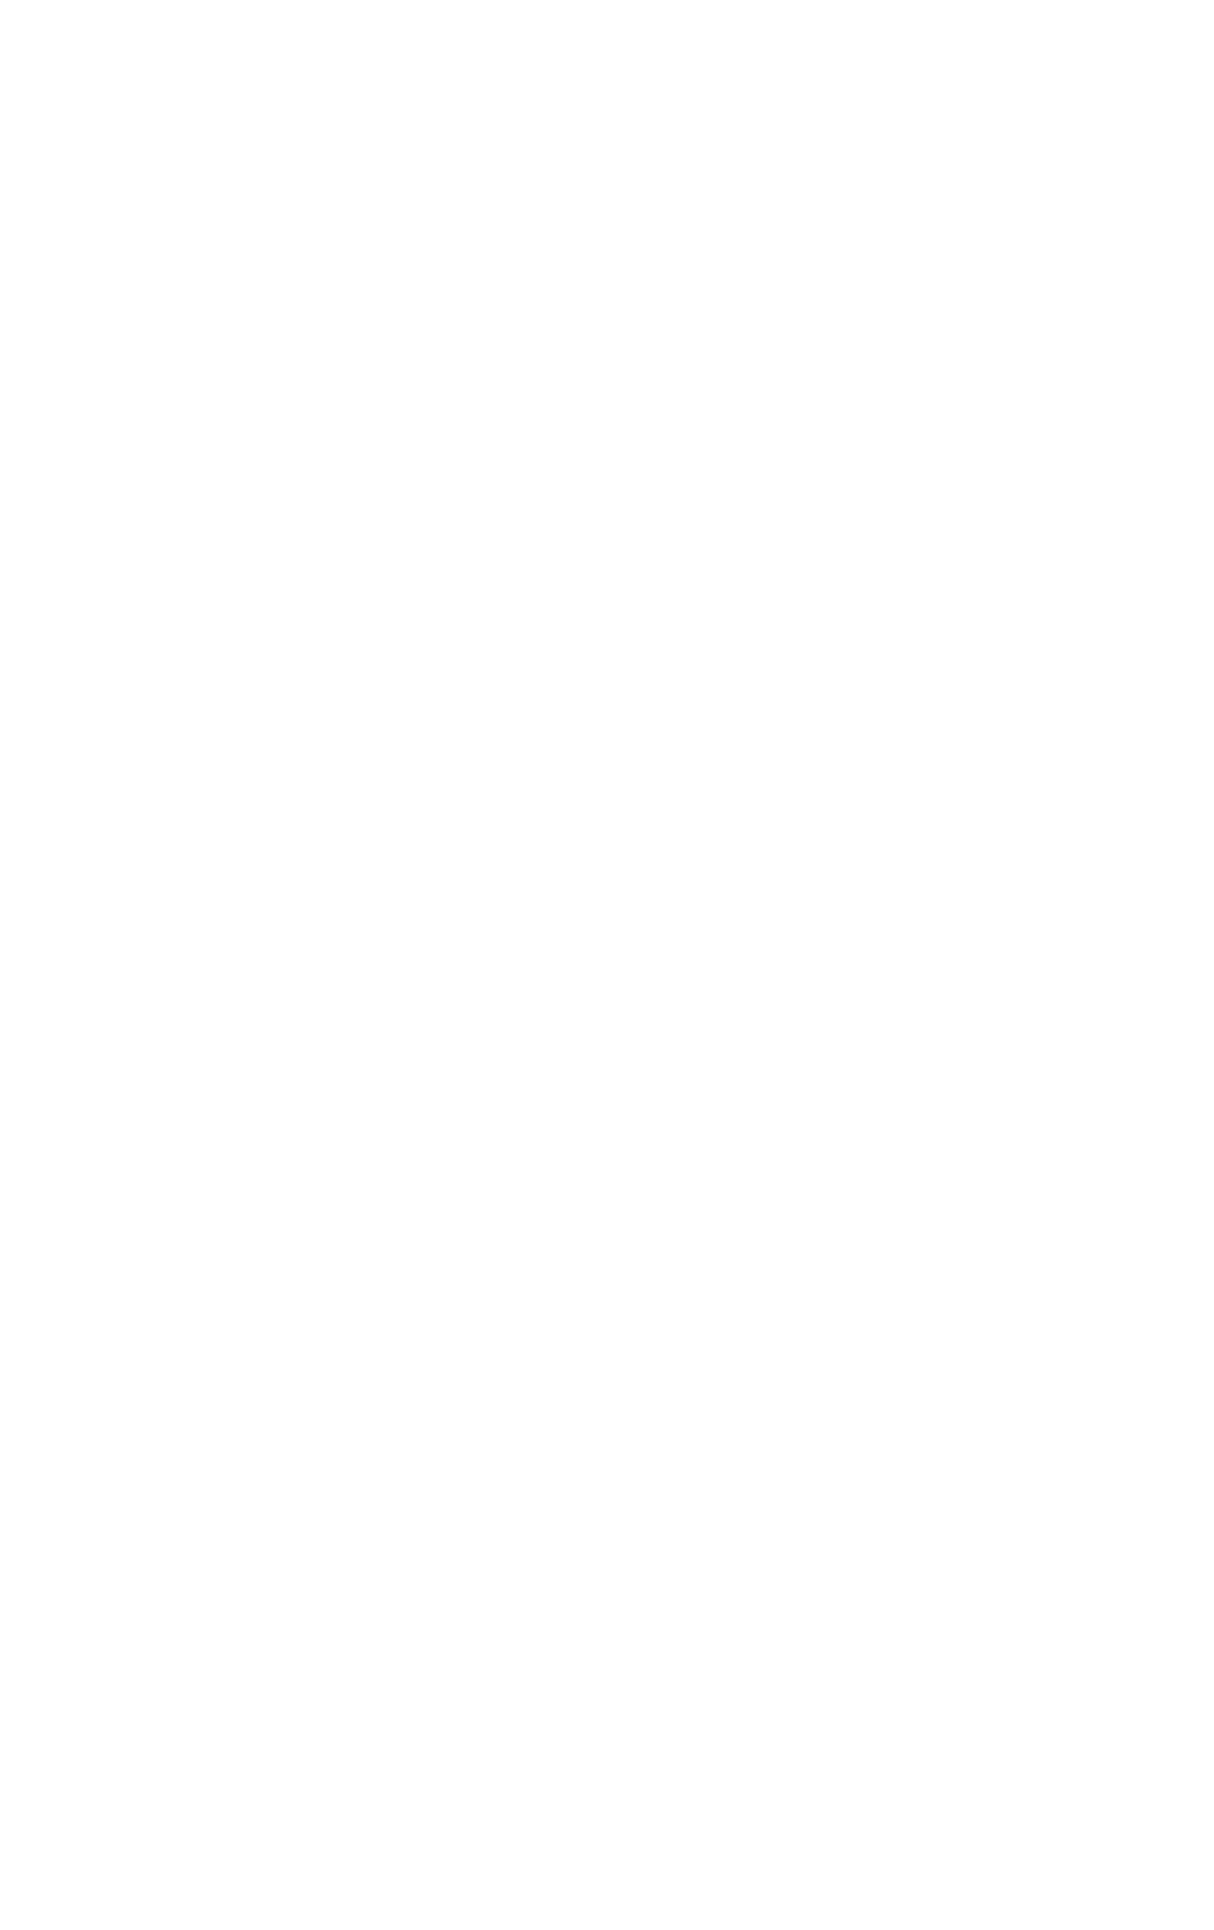 Capture-3